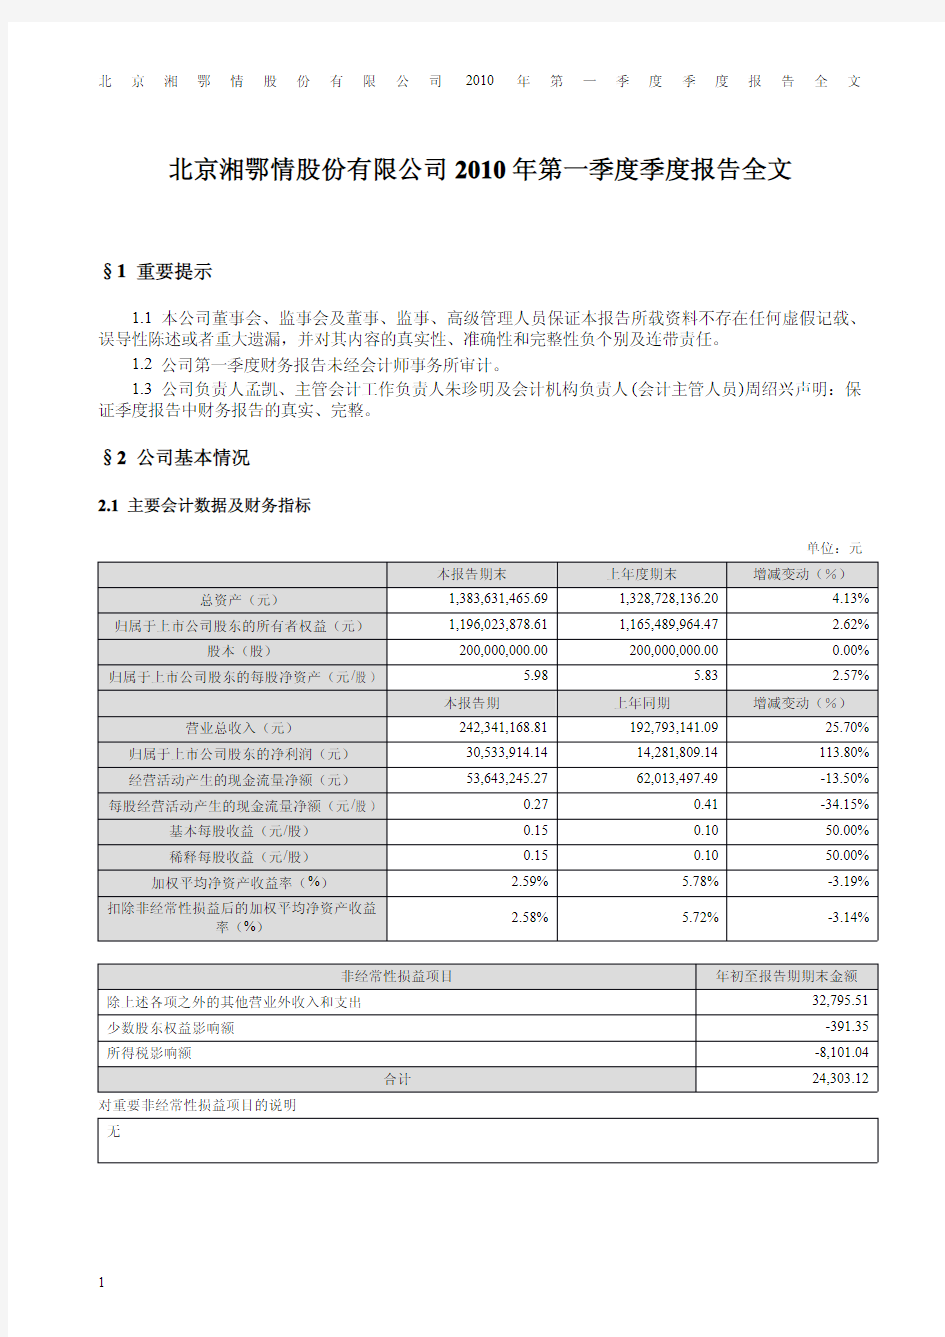 北京湘鄂情股份有限公司2010年第一季度季度报告全文